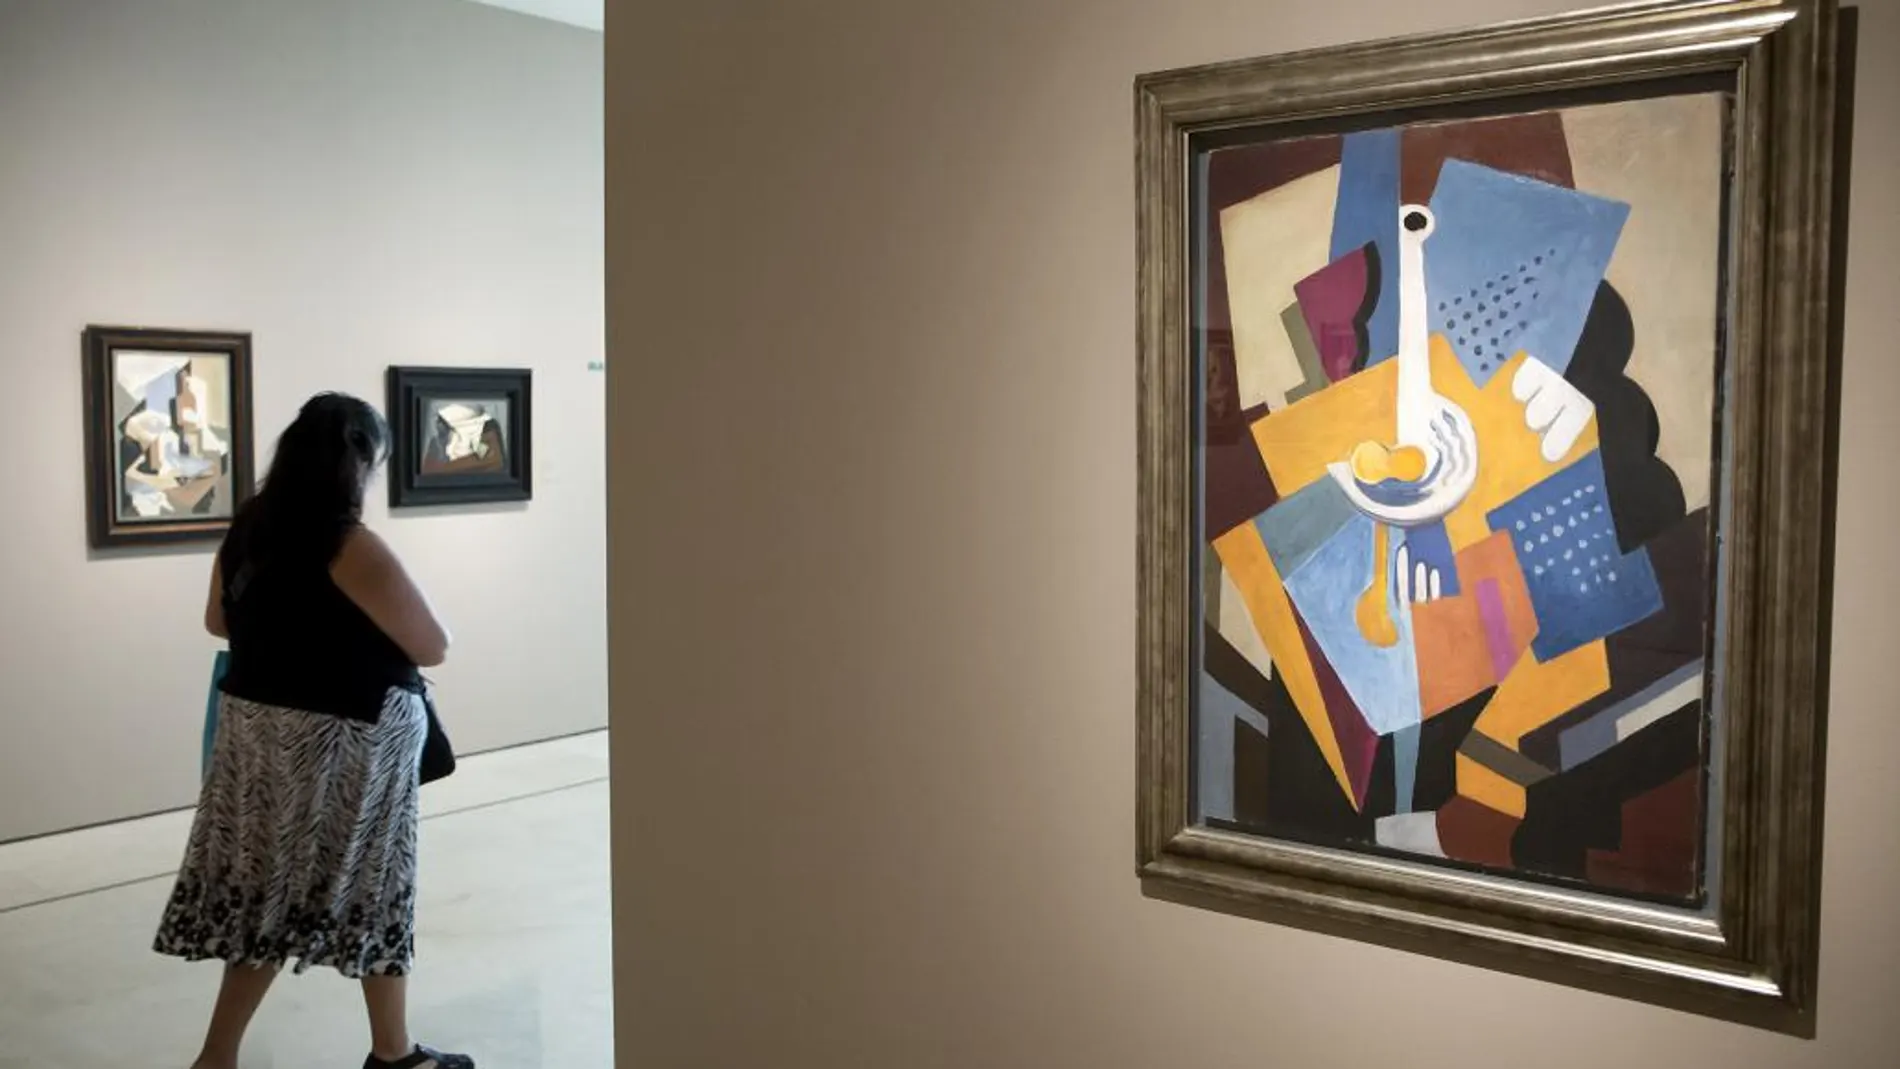 MÁS DE 60 PIEZAS de Picasso, Lipchitz, Dalí o Peinado están expuestas en la muestra